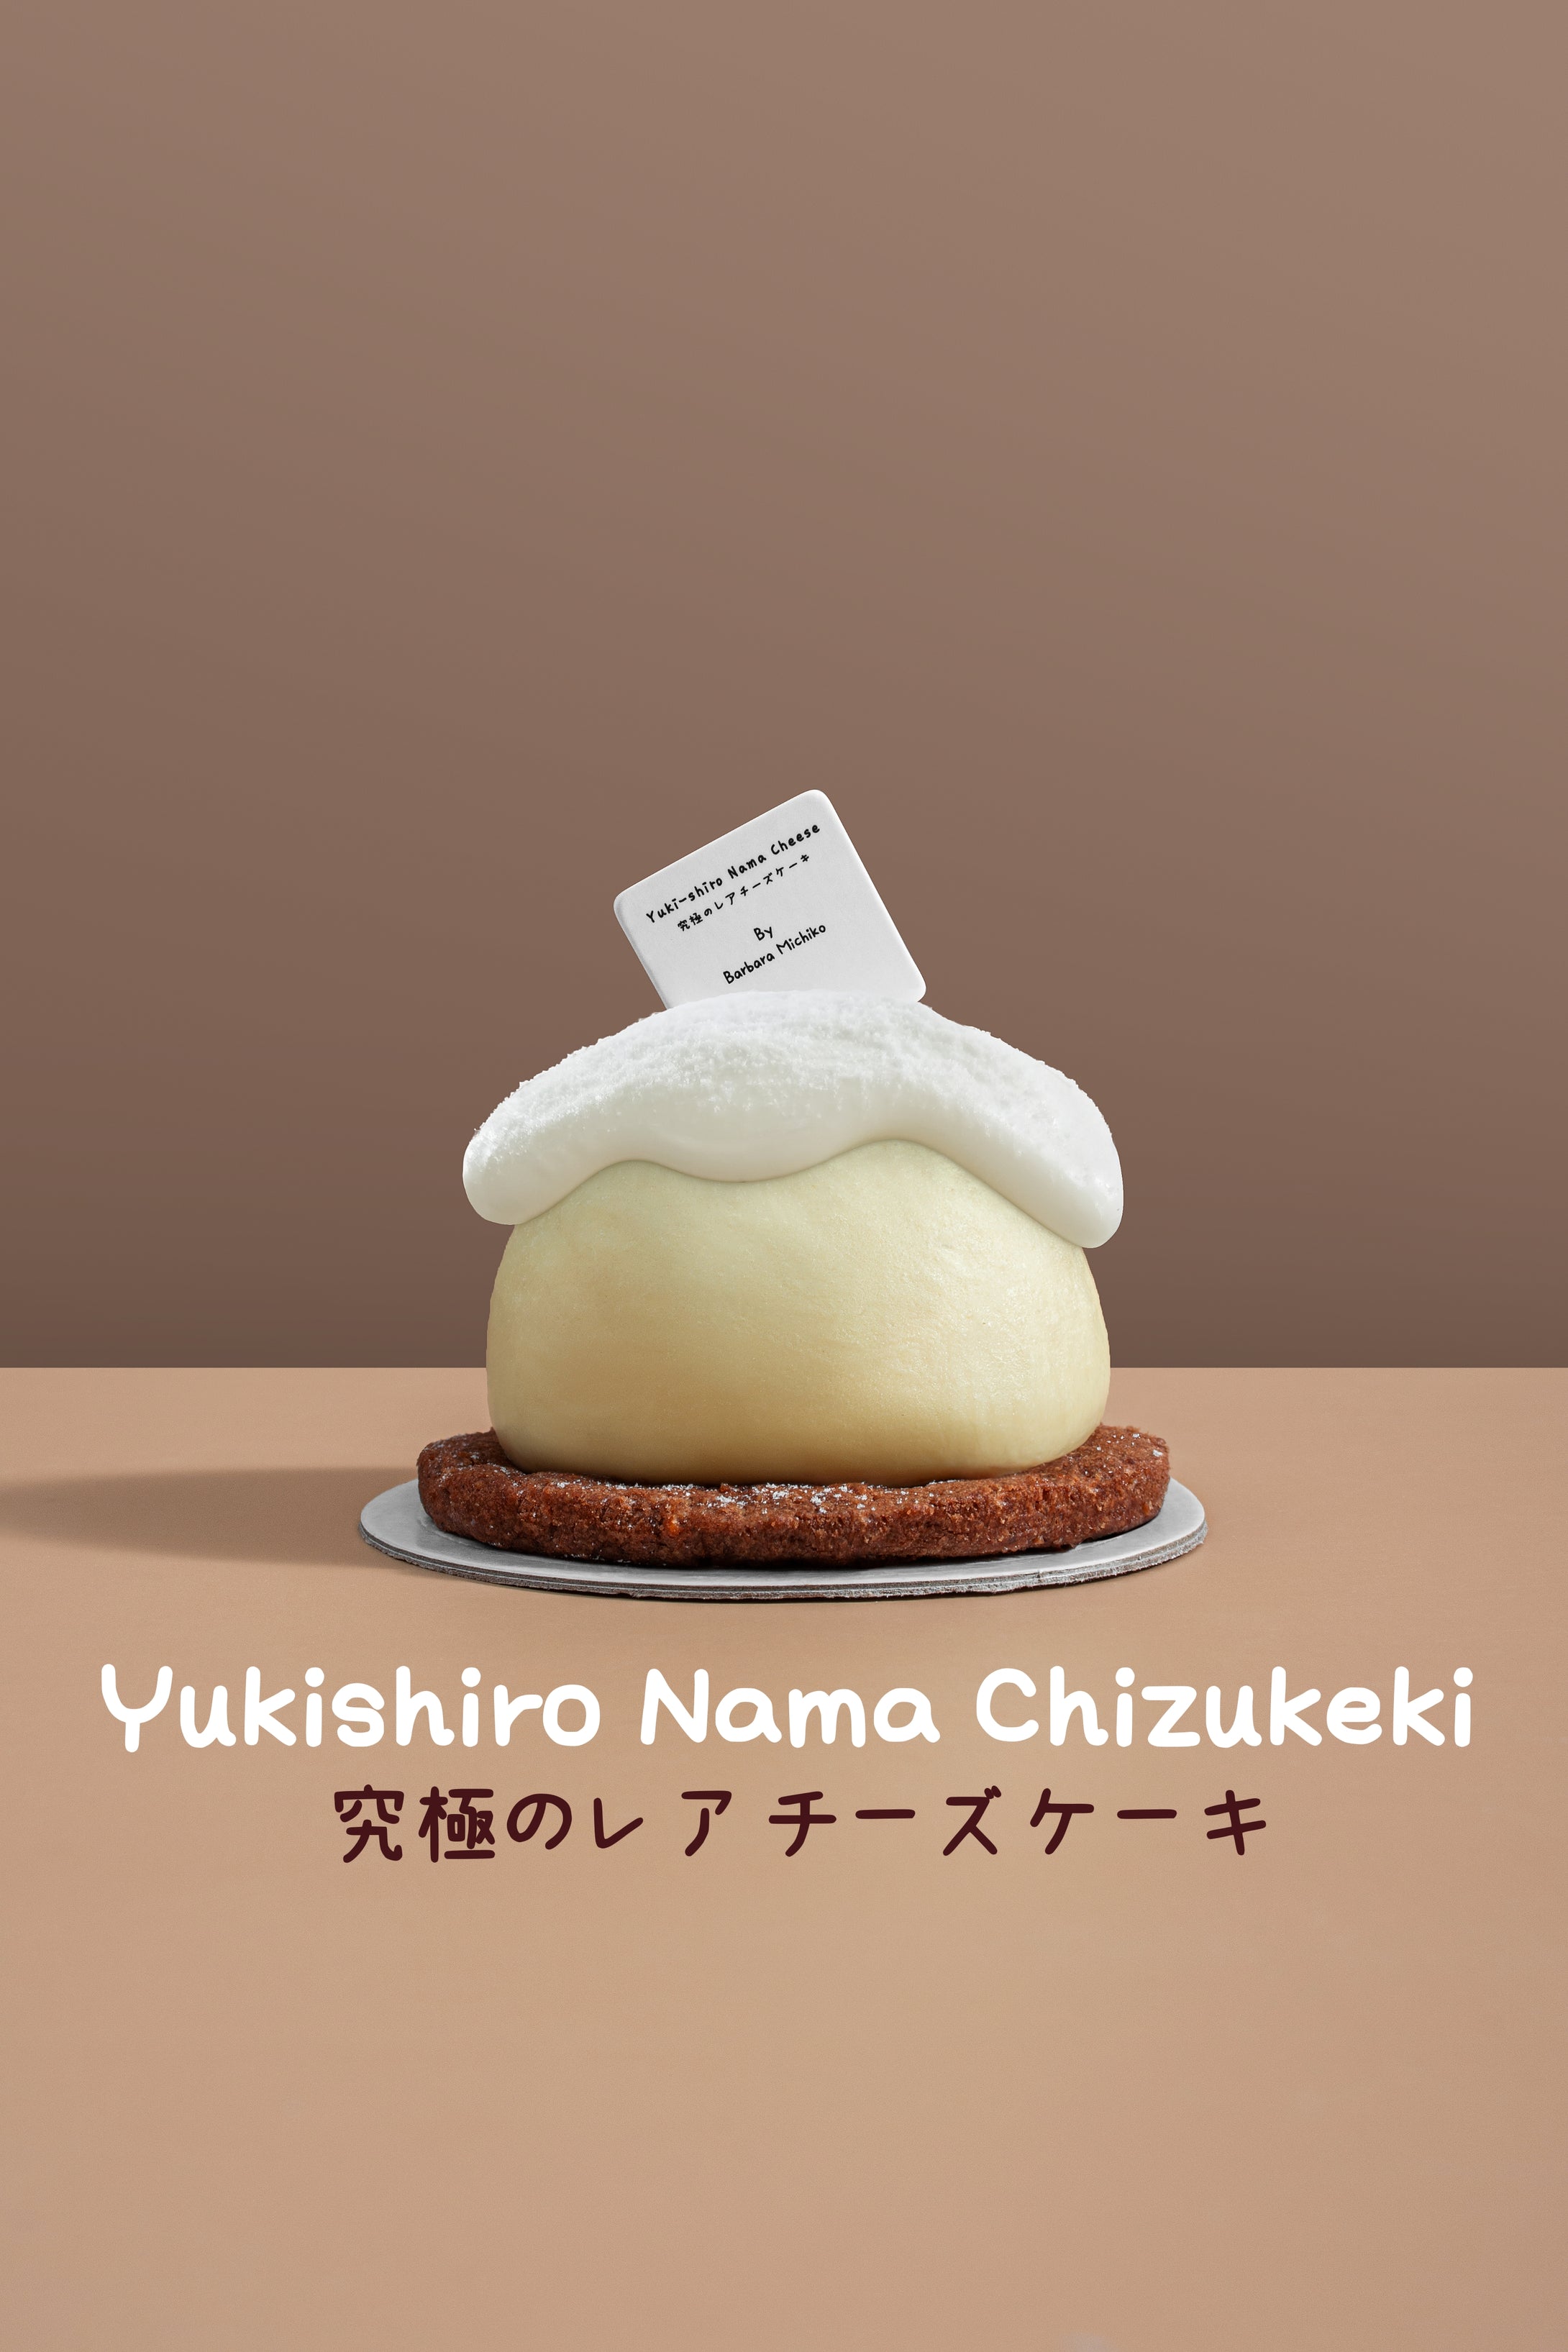 Yukishiro Nama Chizukeki 究極のレアチーズケーキ (6S)